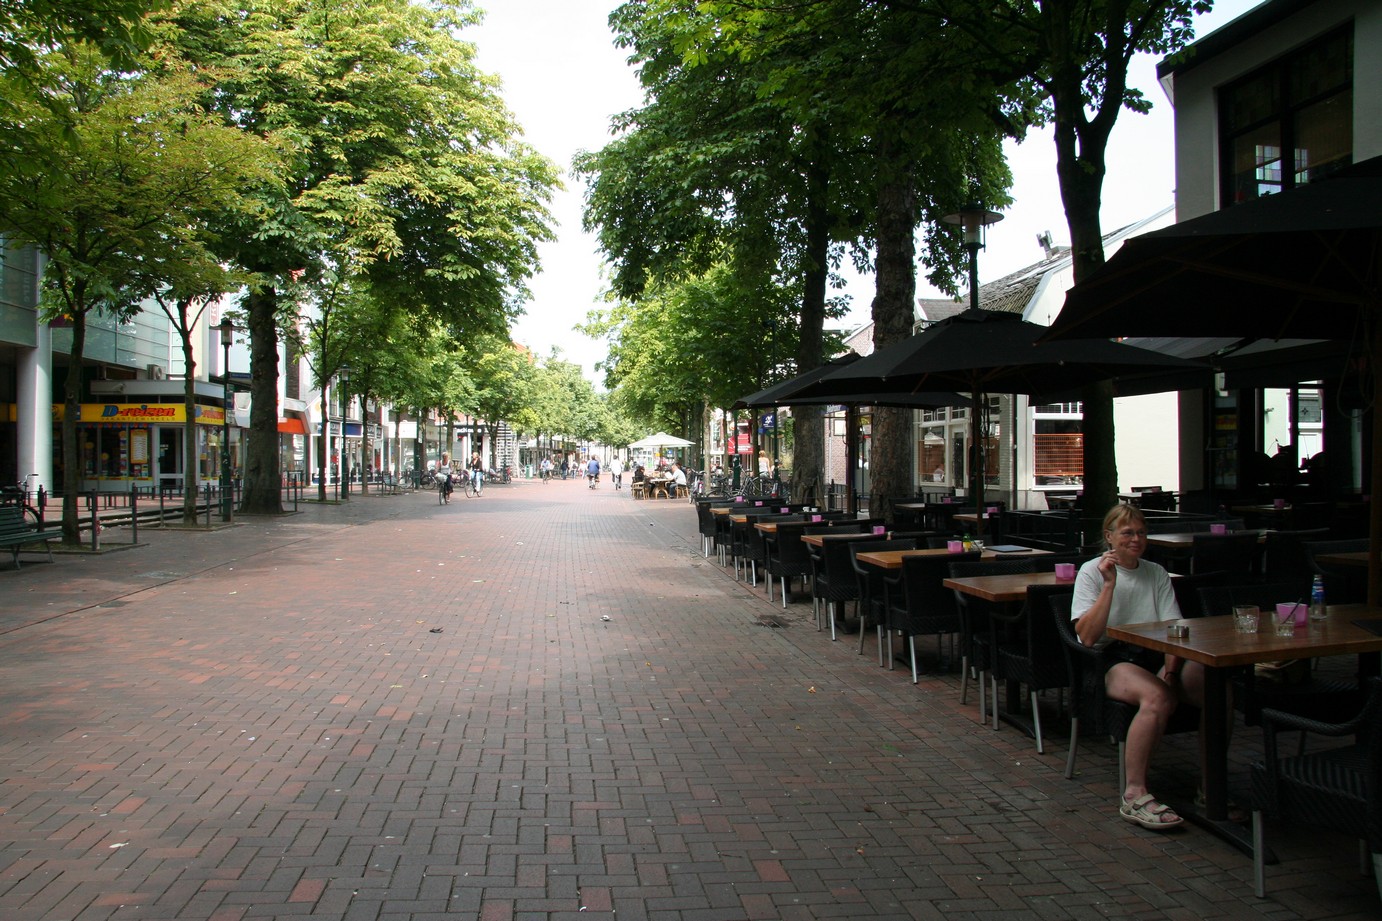 The main street in Hilversum I believe